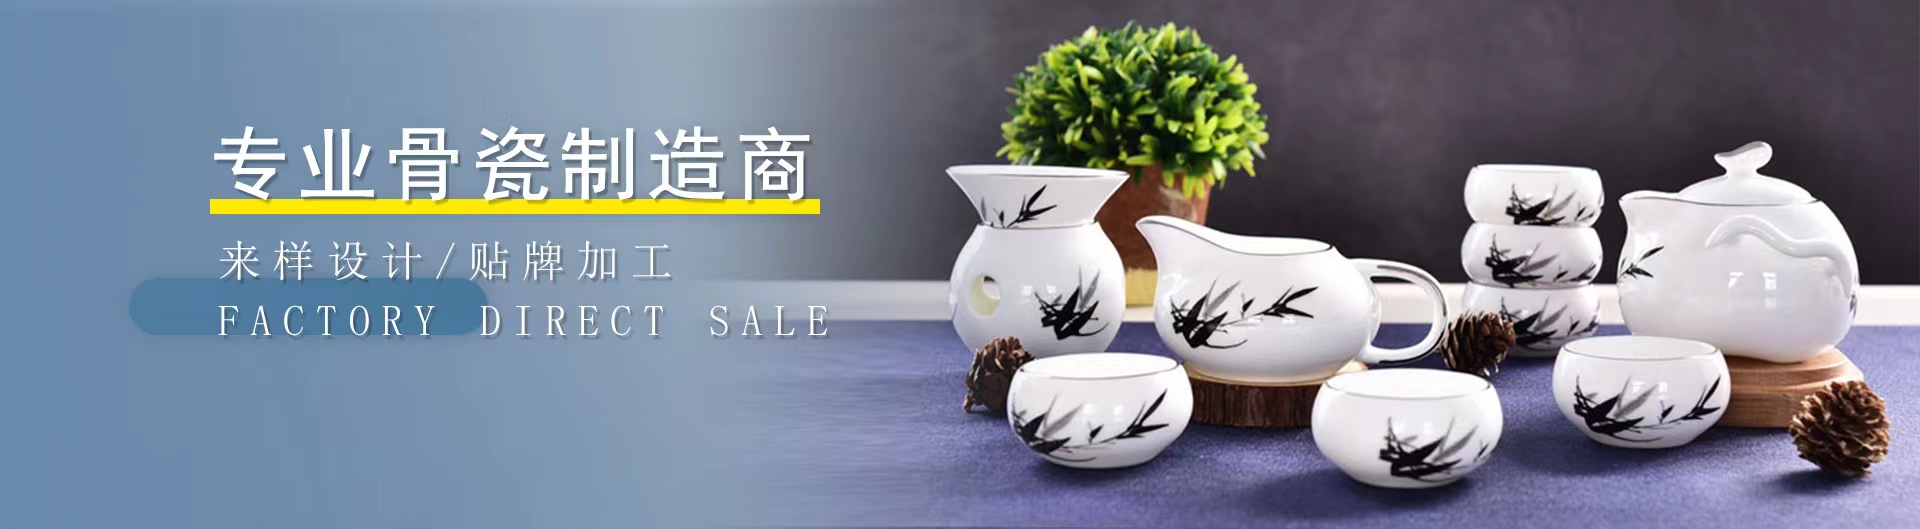 陶瓷杯,马克杯,骨瓷餐具定制,骨质瓷广告杯定做厂家-唐山ag陶瓷